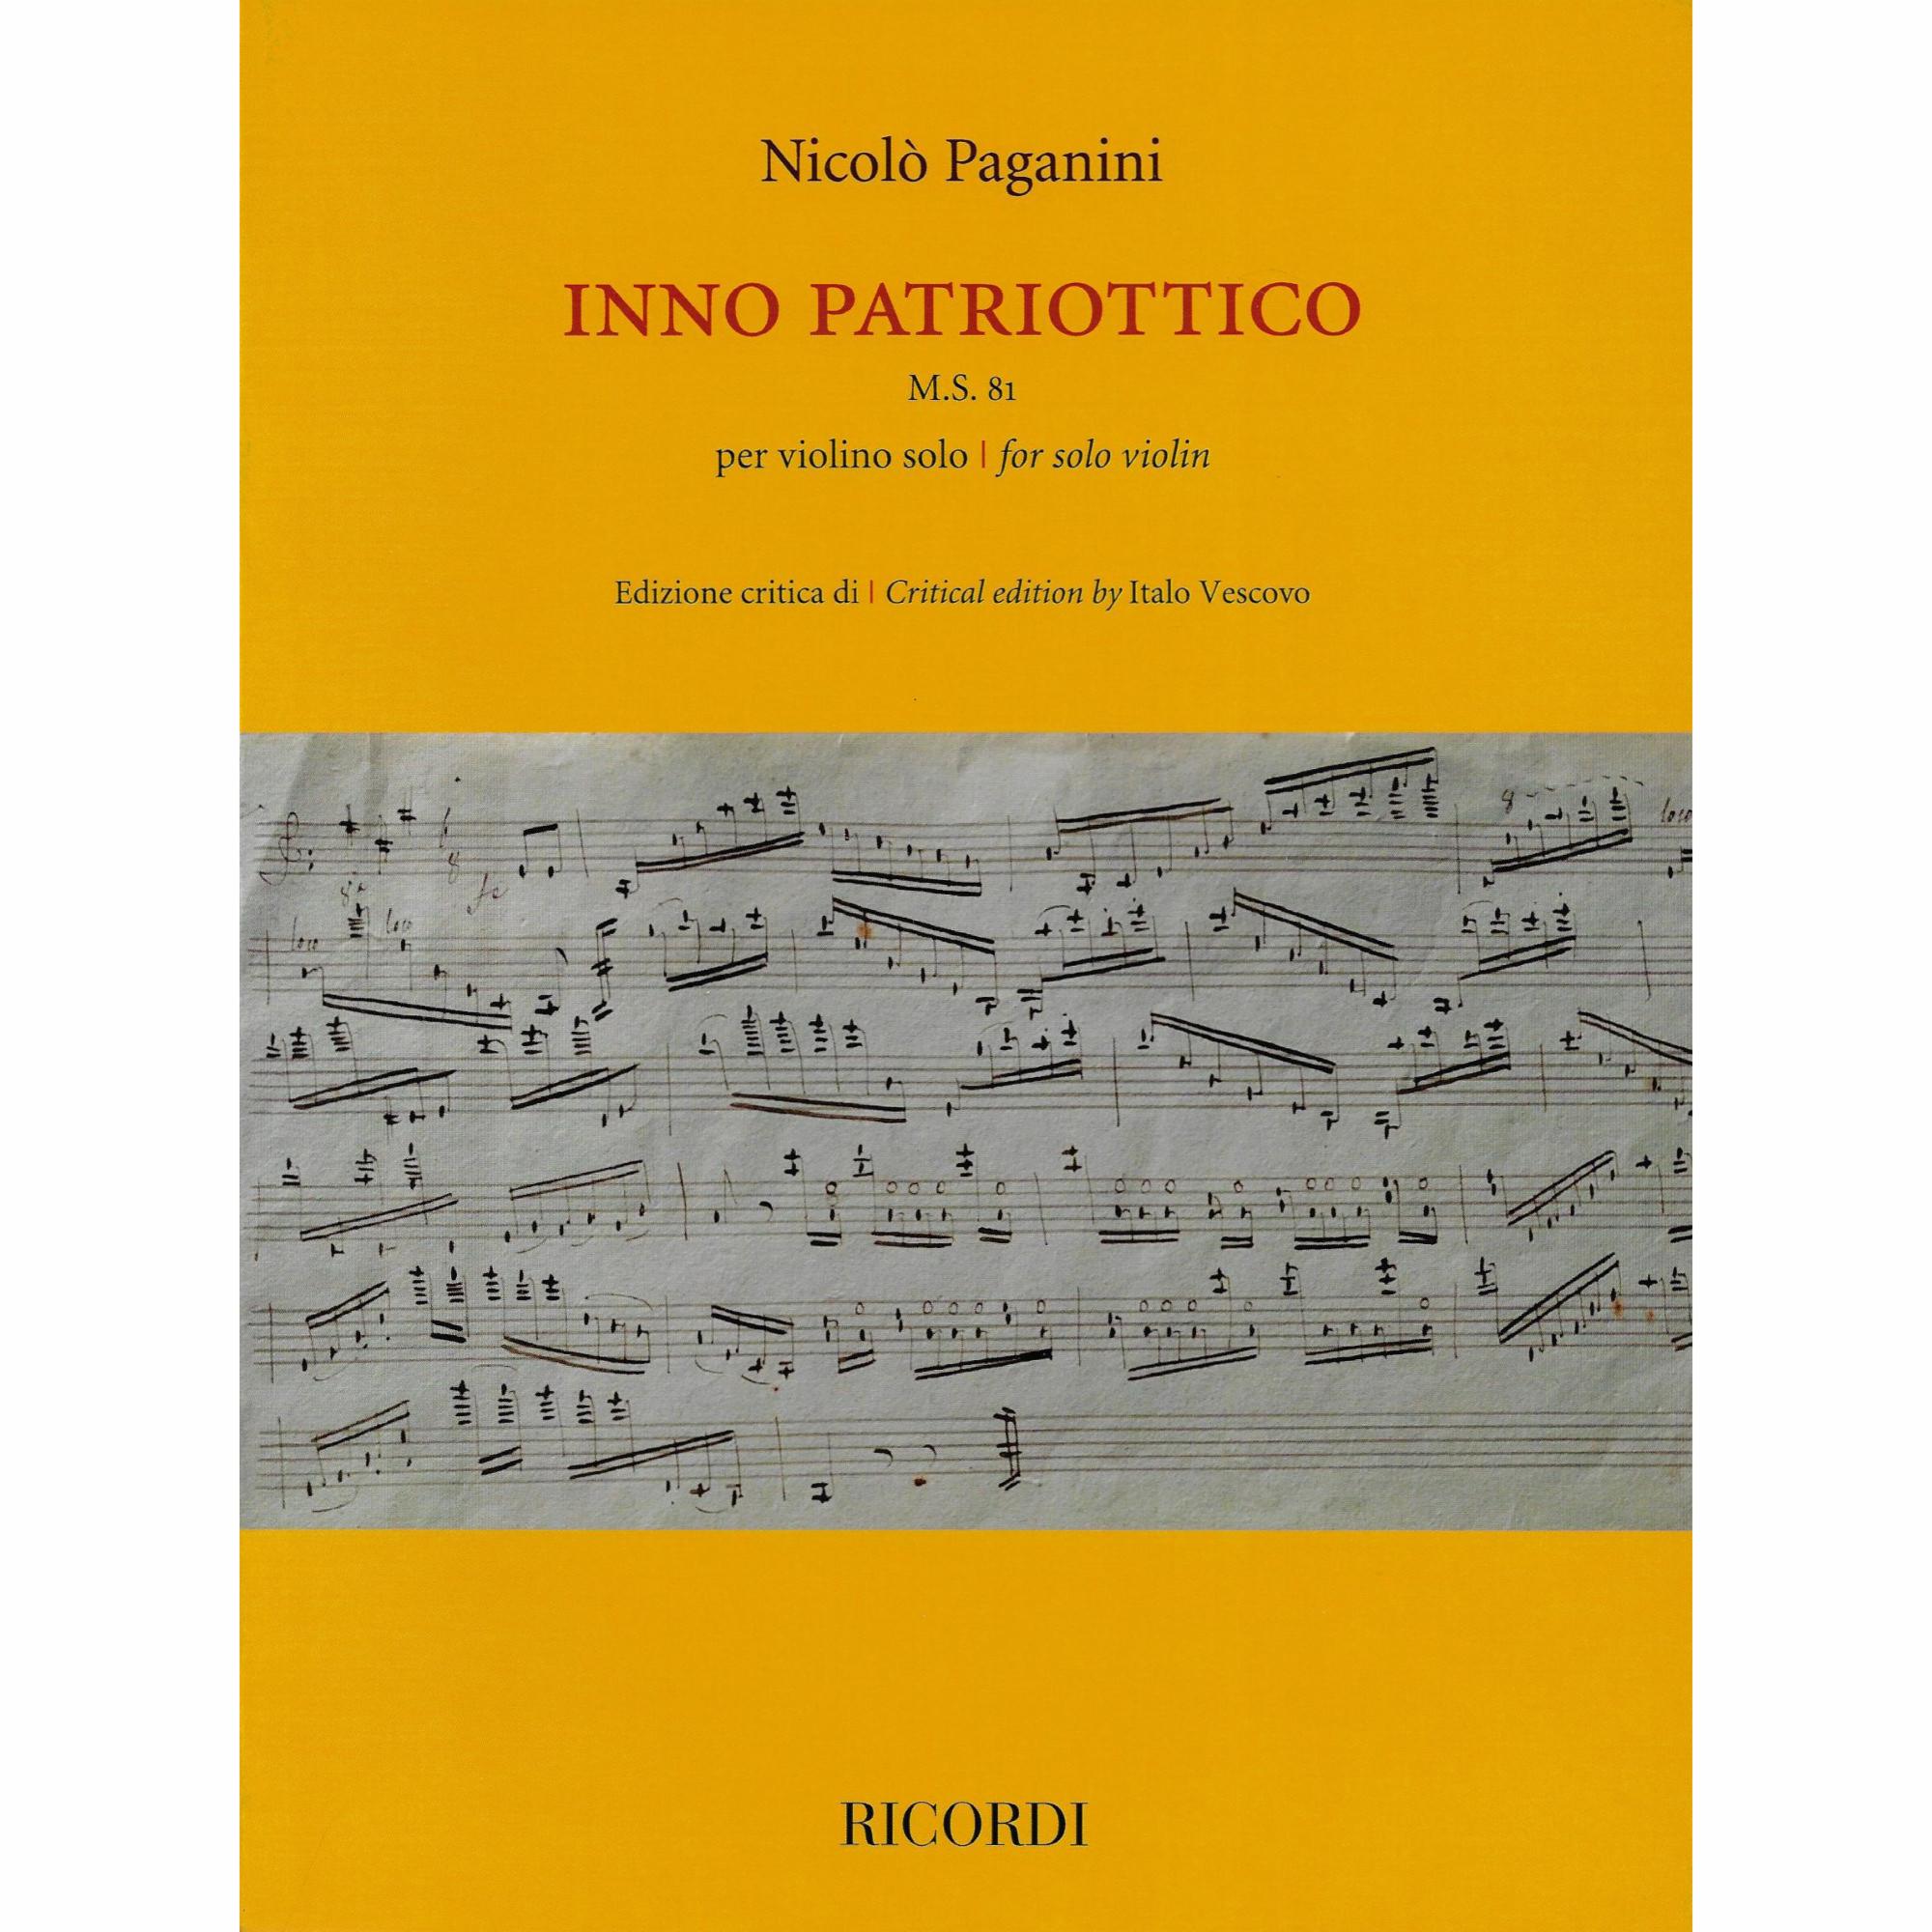 Paganini -- Inno Patriottico, M.S. 81 for Solo Violin